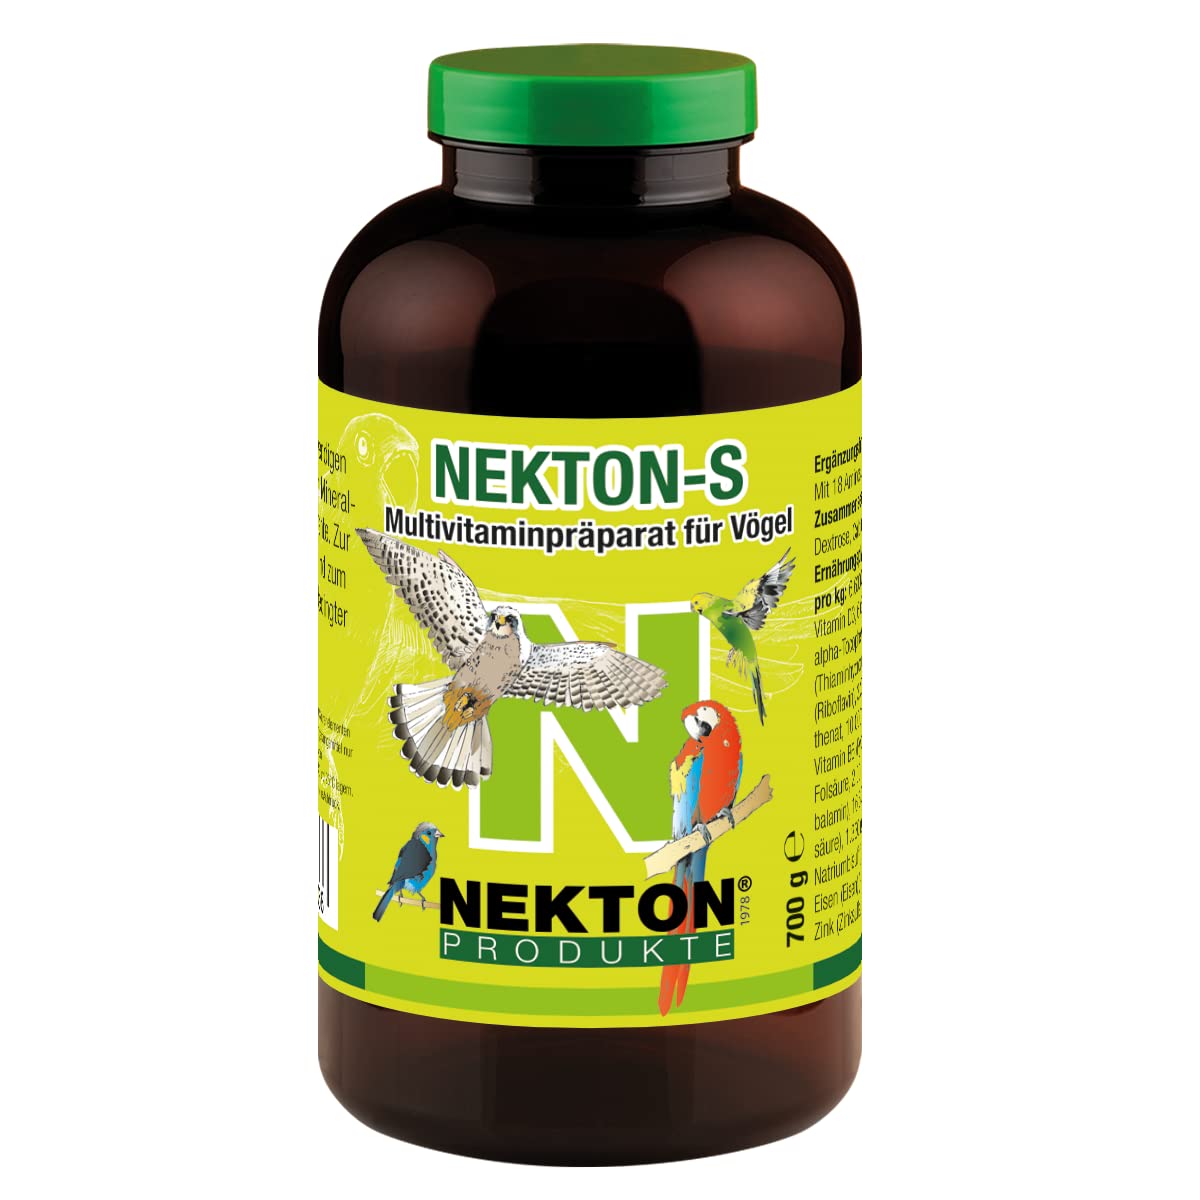 NEKTON-S | Multivitaminpräparat für Vögel | Vitamine, Aminosäuren, Mineralstoffe und Spurenelemente | Made in Germany (700g)